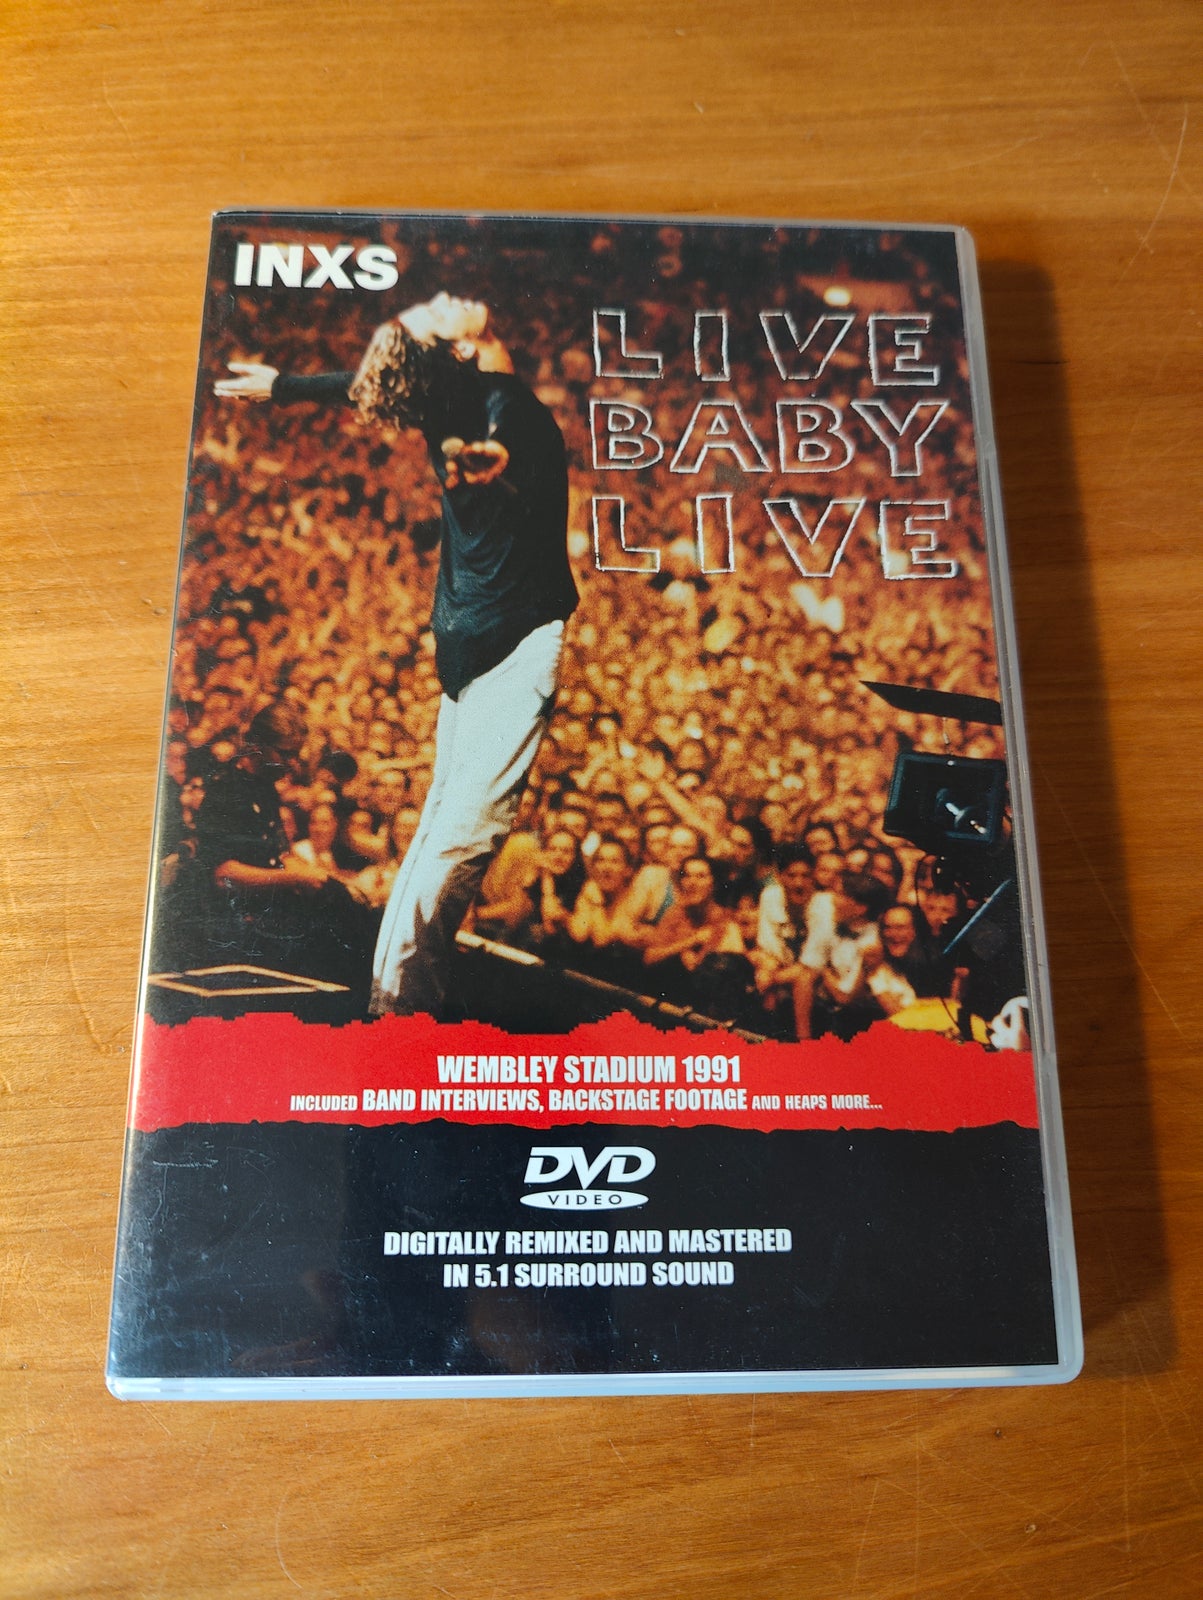 INXS Live Baby Live, instruktør INXS, DVD – – Køb og Salg af Nyt og  Brugt